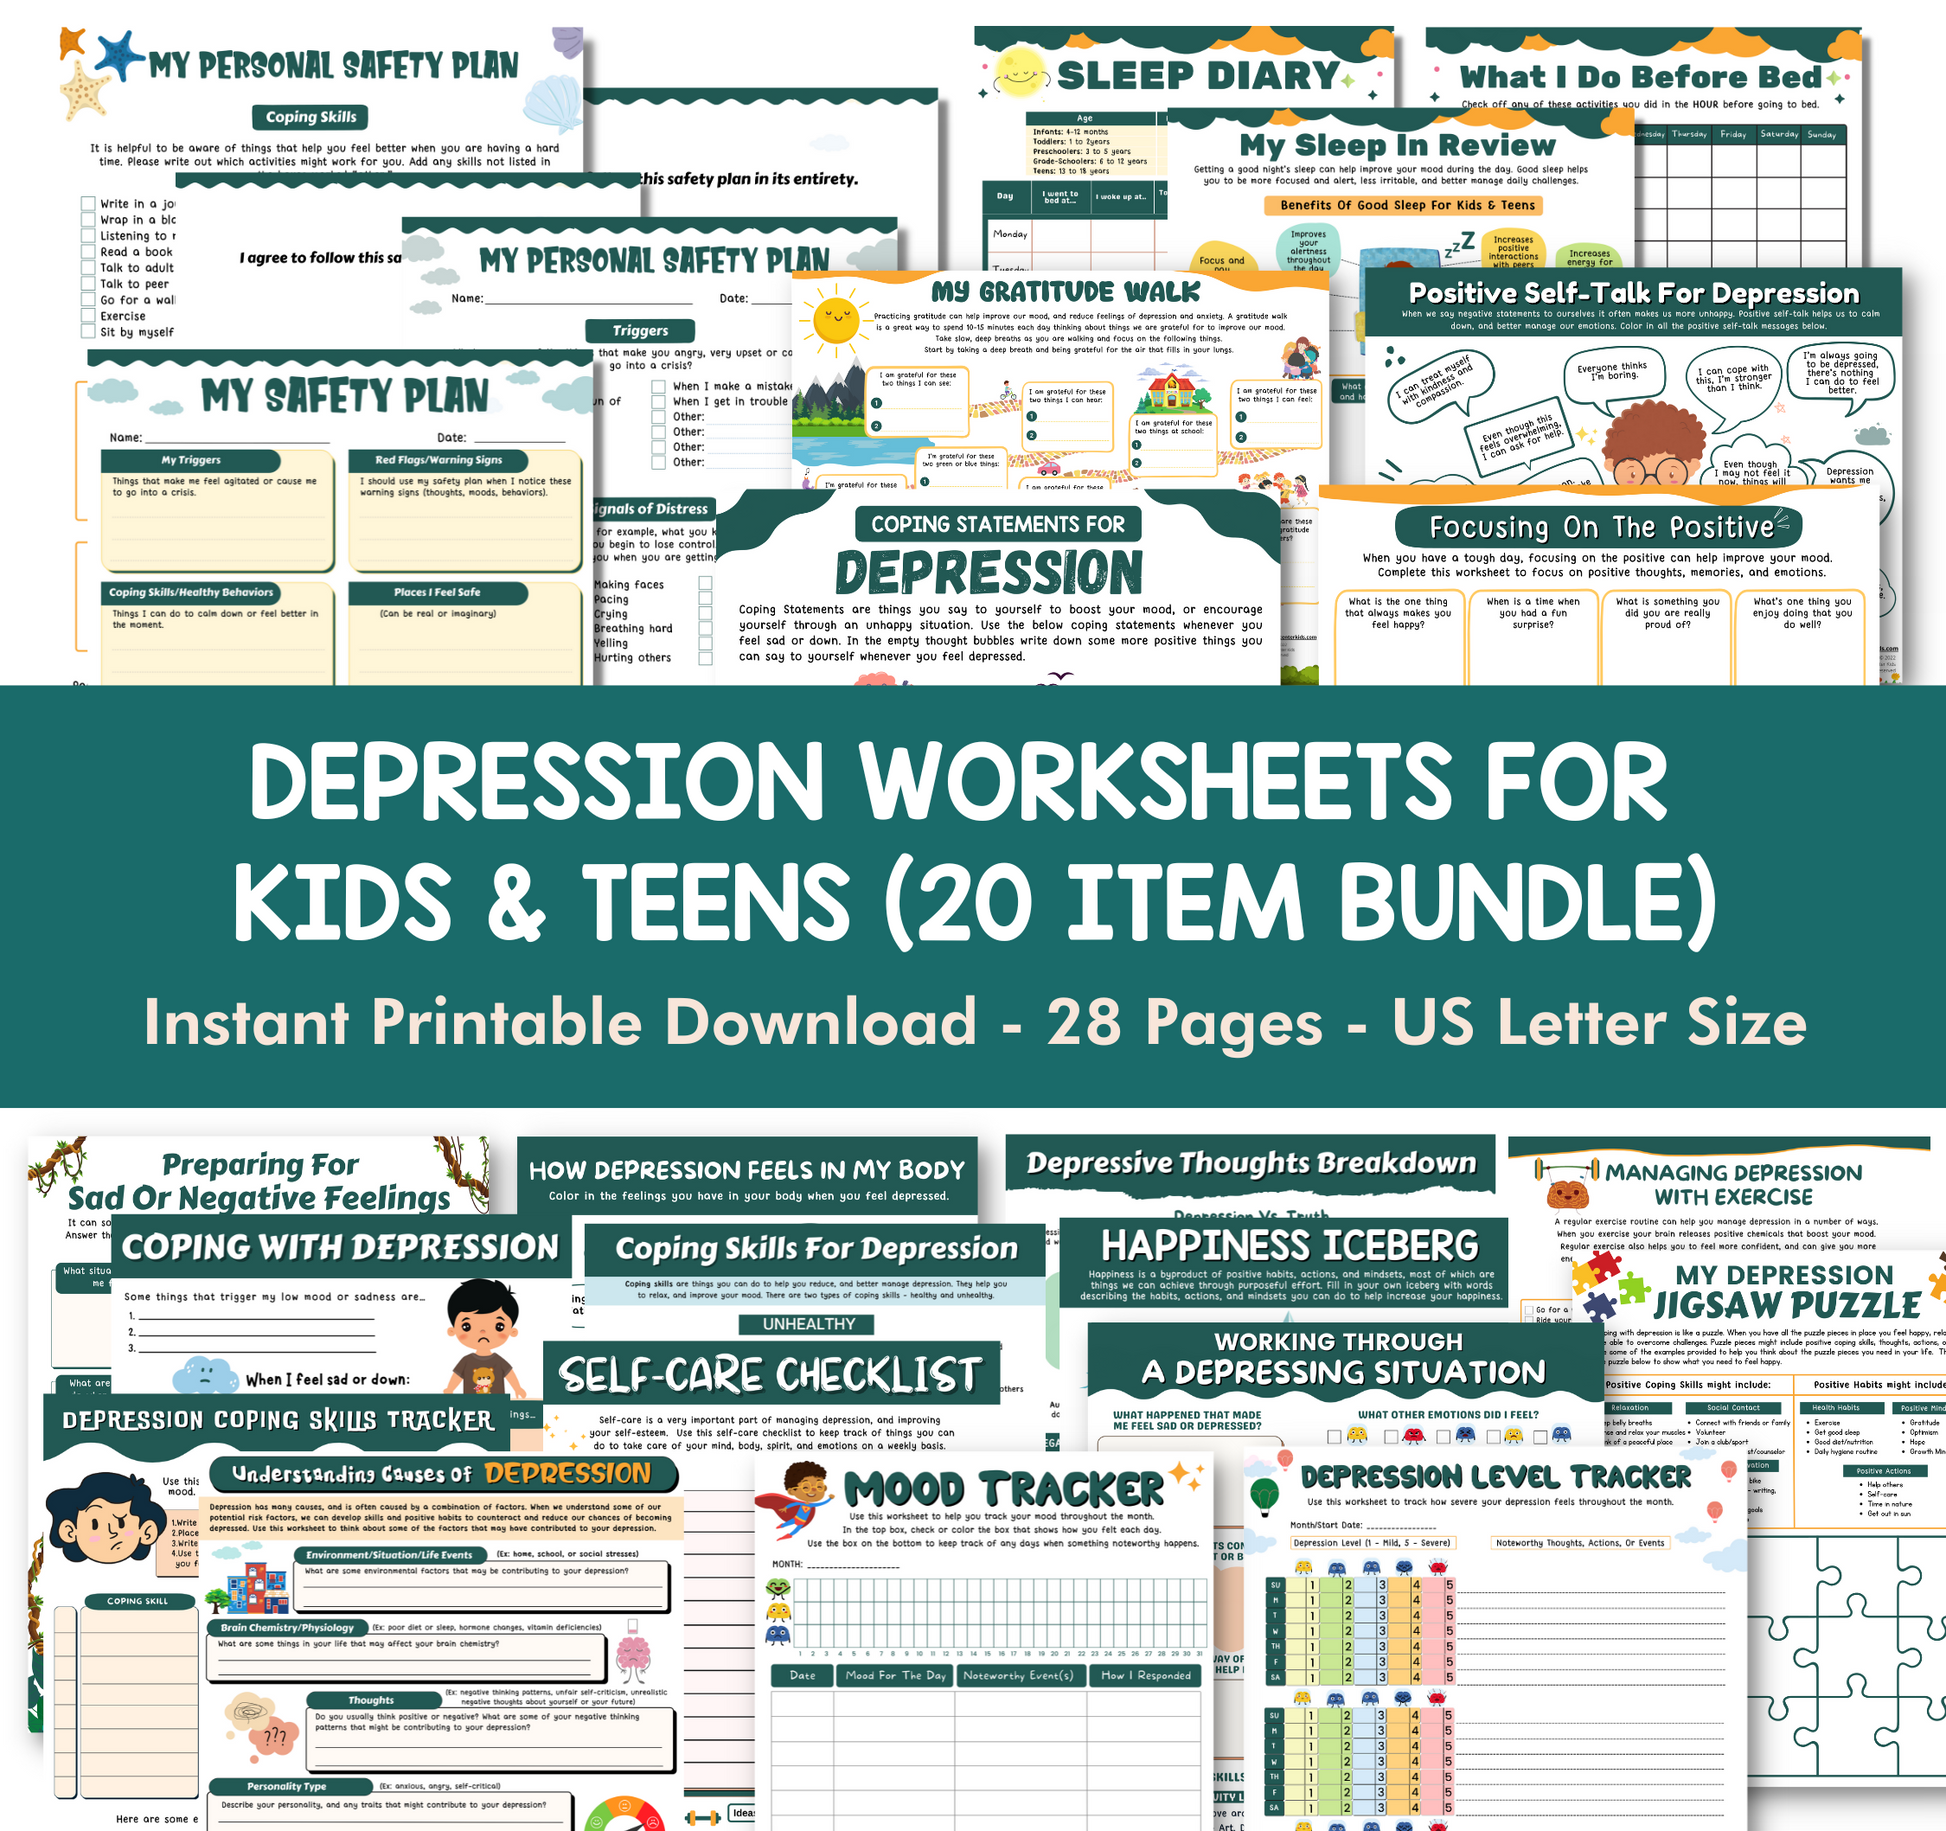 Depression Infographic Set for Kids & Teens (20 Item Bundle)